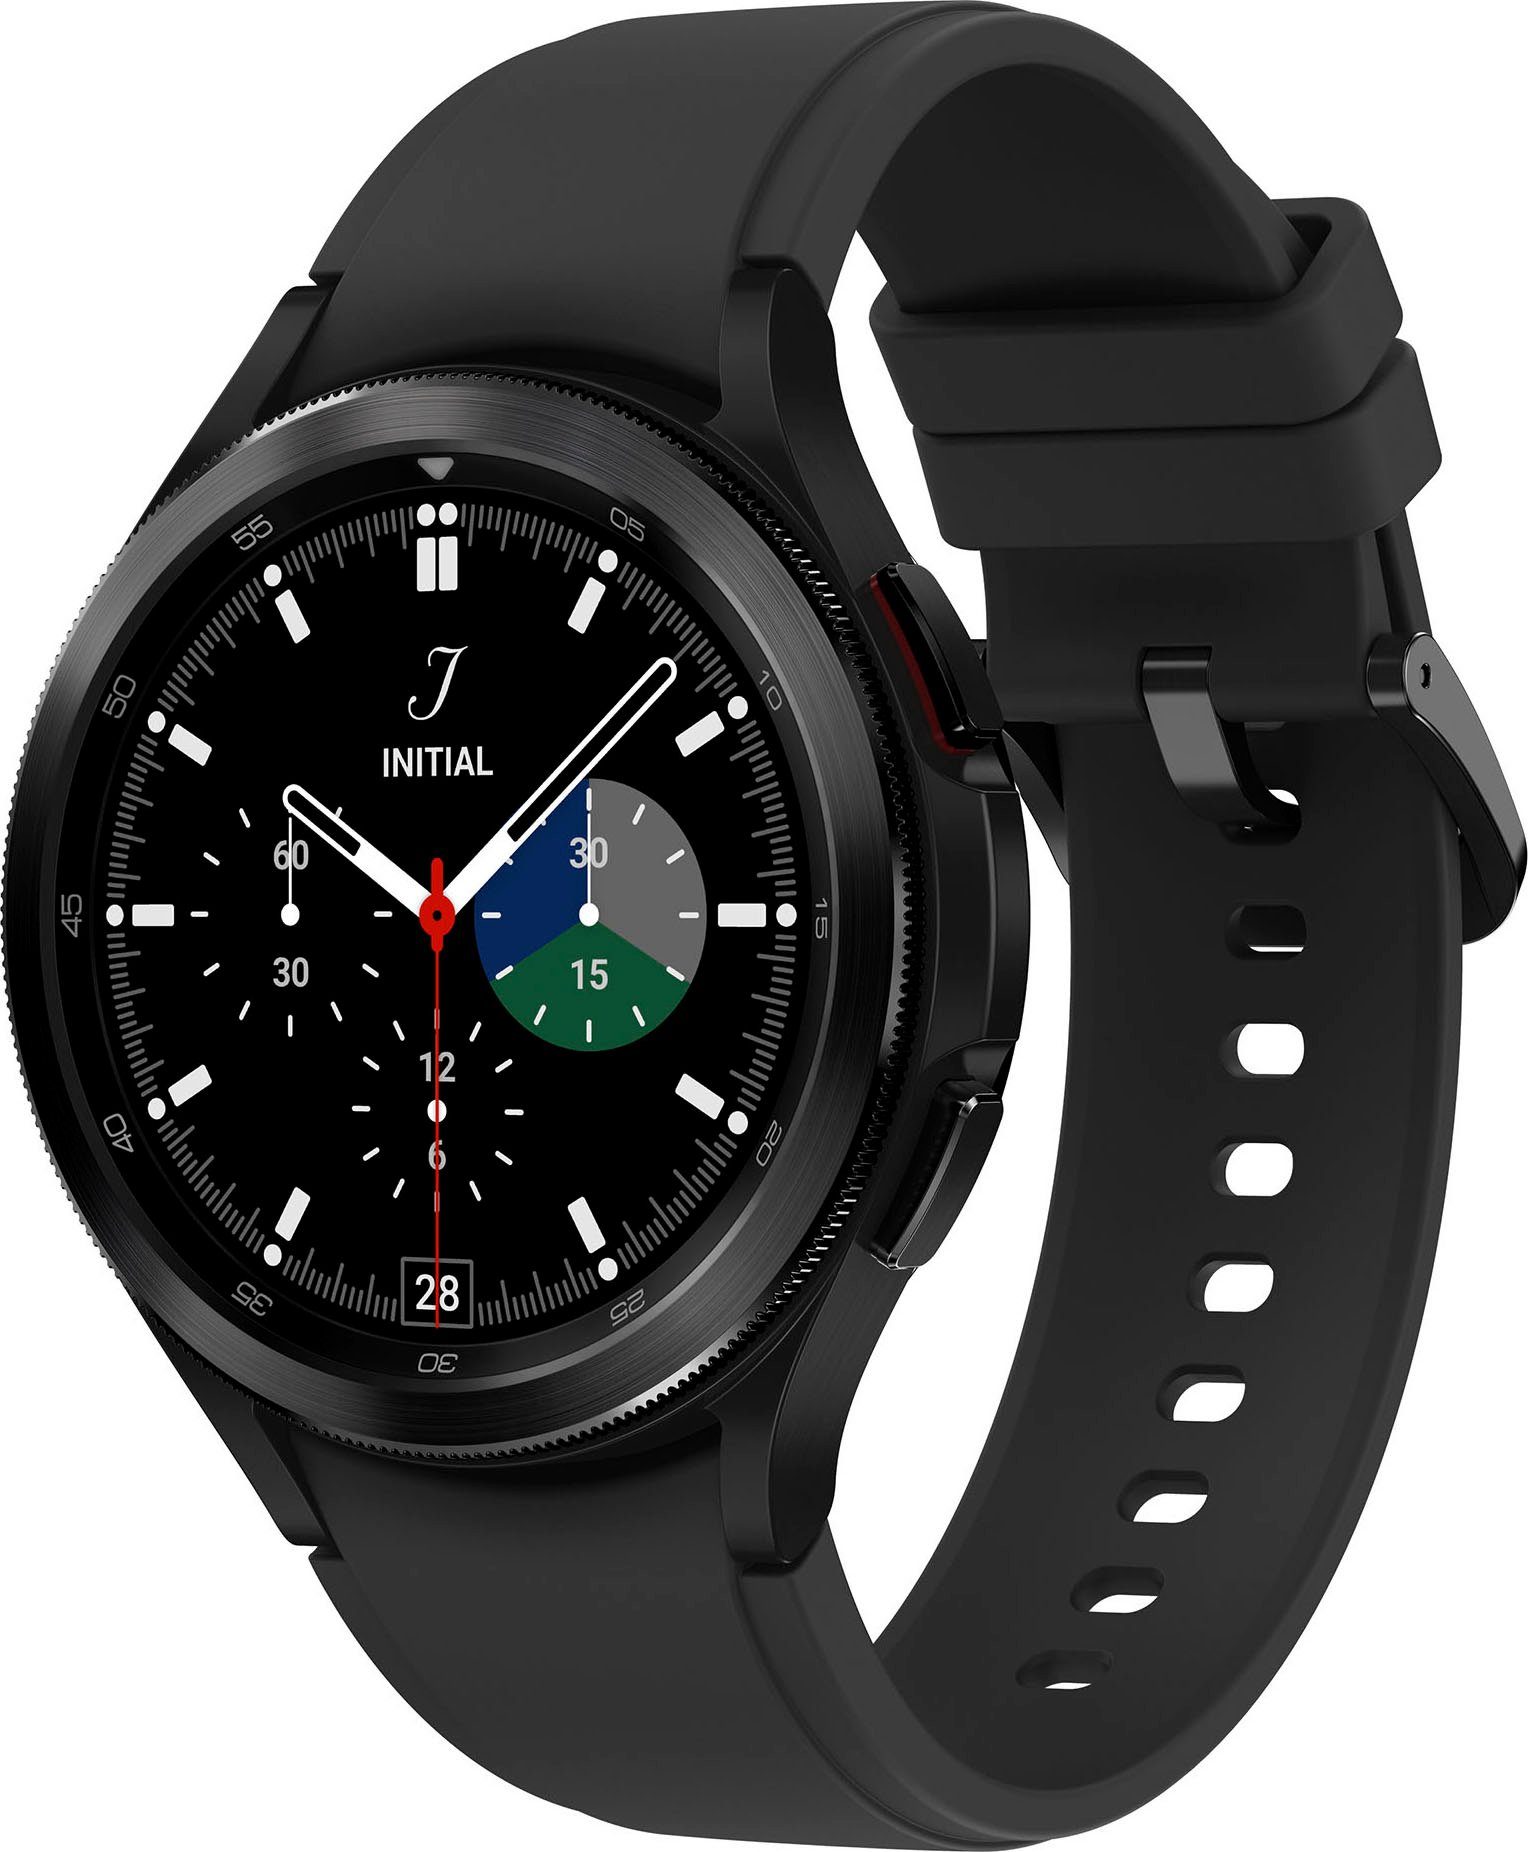 Samsung Galaxy Watch 4 classic 46mm LTE Smartwatch (3,46 cm/1,4 Zoll, Wear OS by Google), Fitness Uhr, Fitness Tracker, Gesundheitsfunktionen schwarz | schwarz | Samsung Galaxy Watch